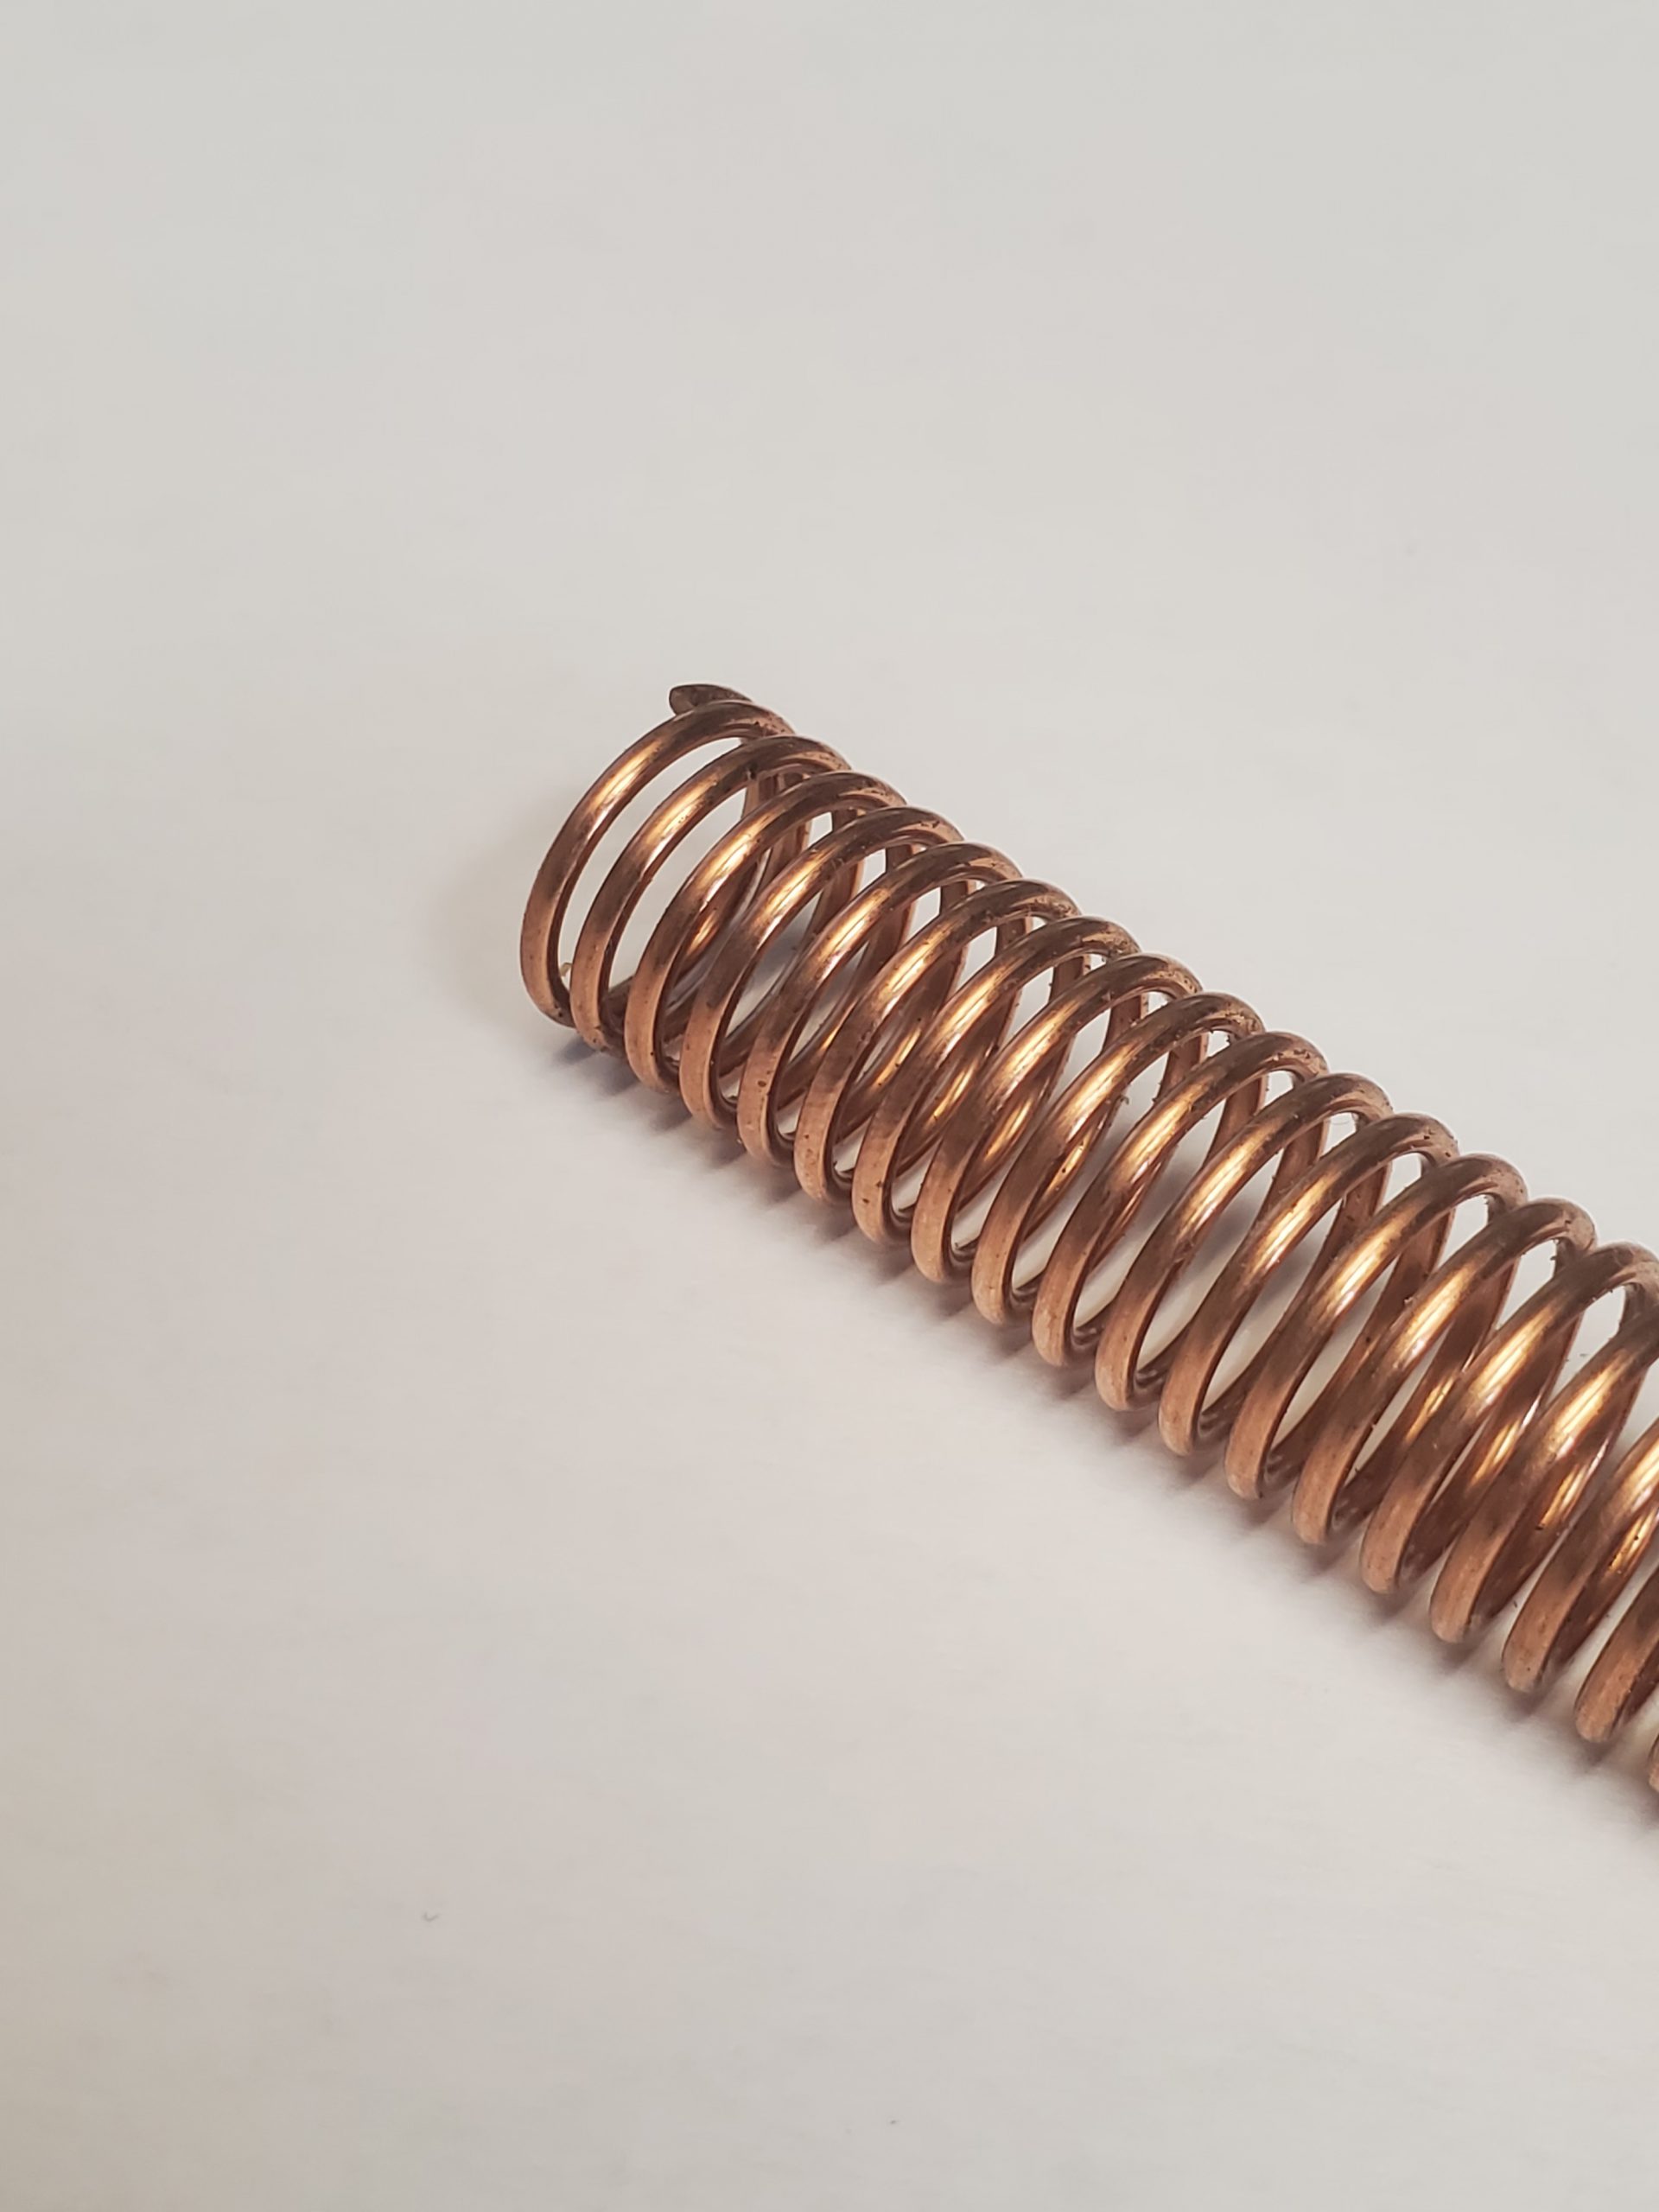 Copper Compression Spring